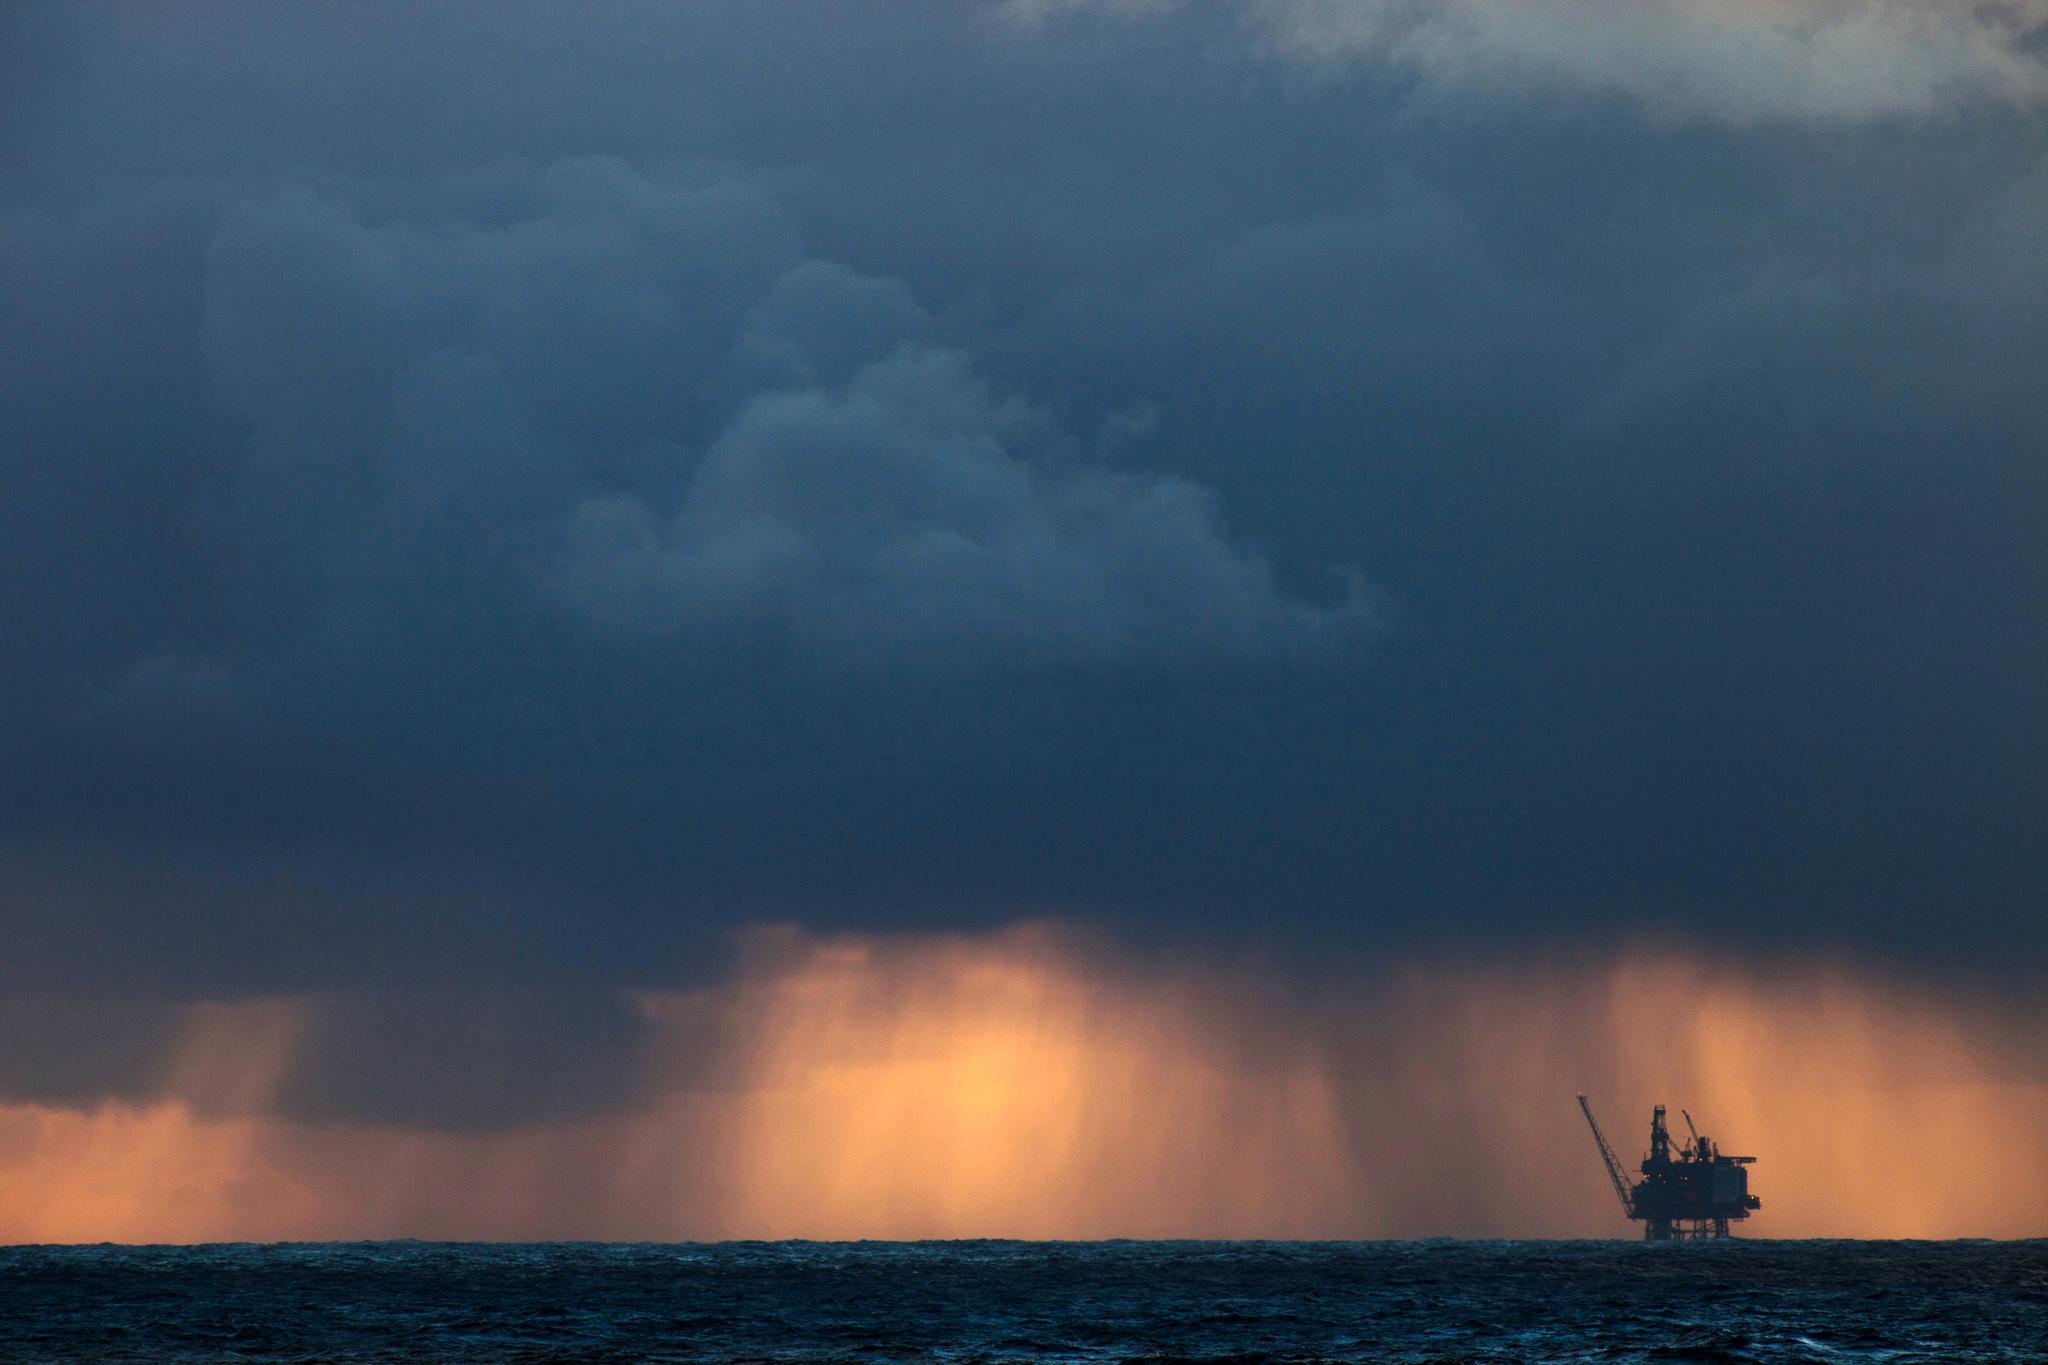 Oljeboringen kryper nordover og kommer neste år nærmere de omstridte havområdene rundt Svalbard.